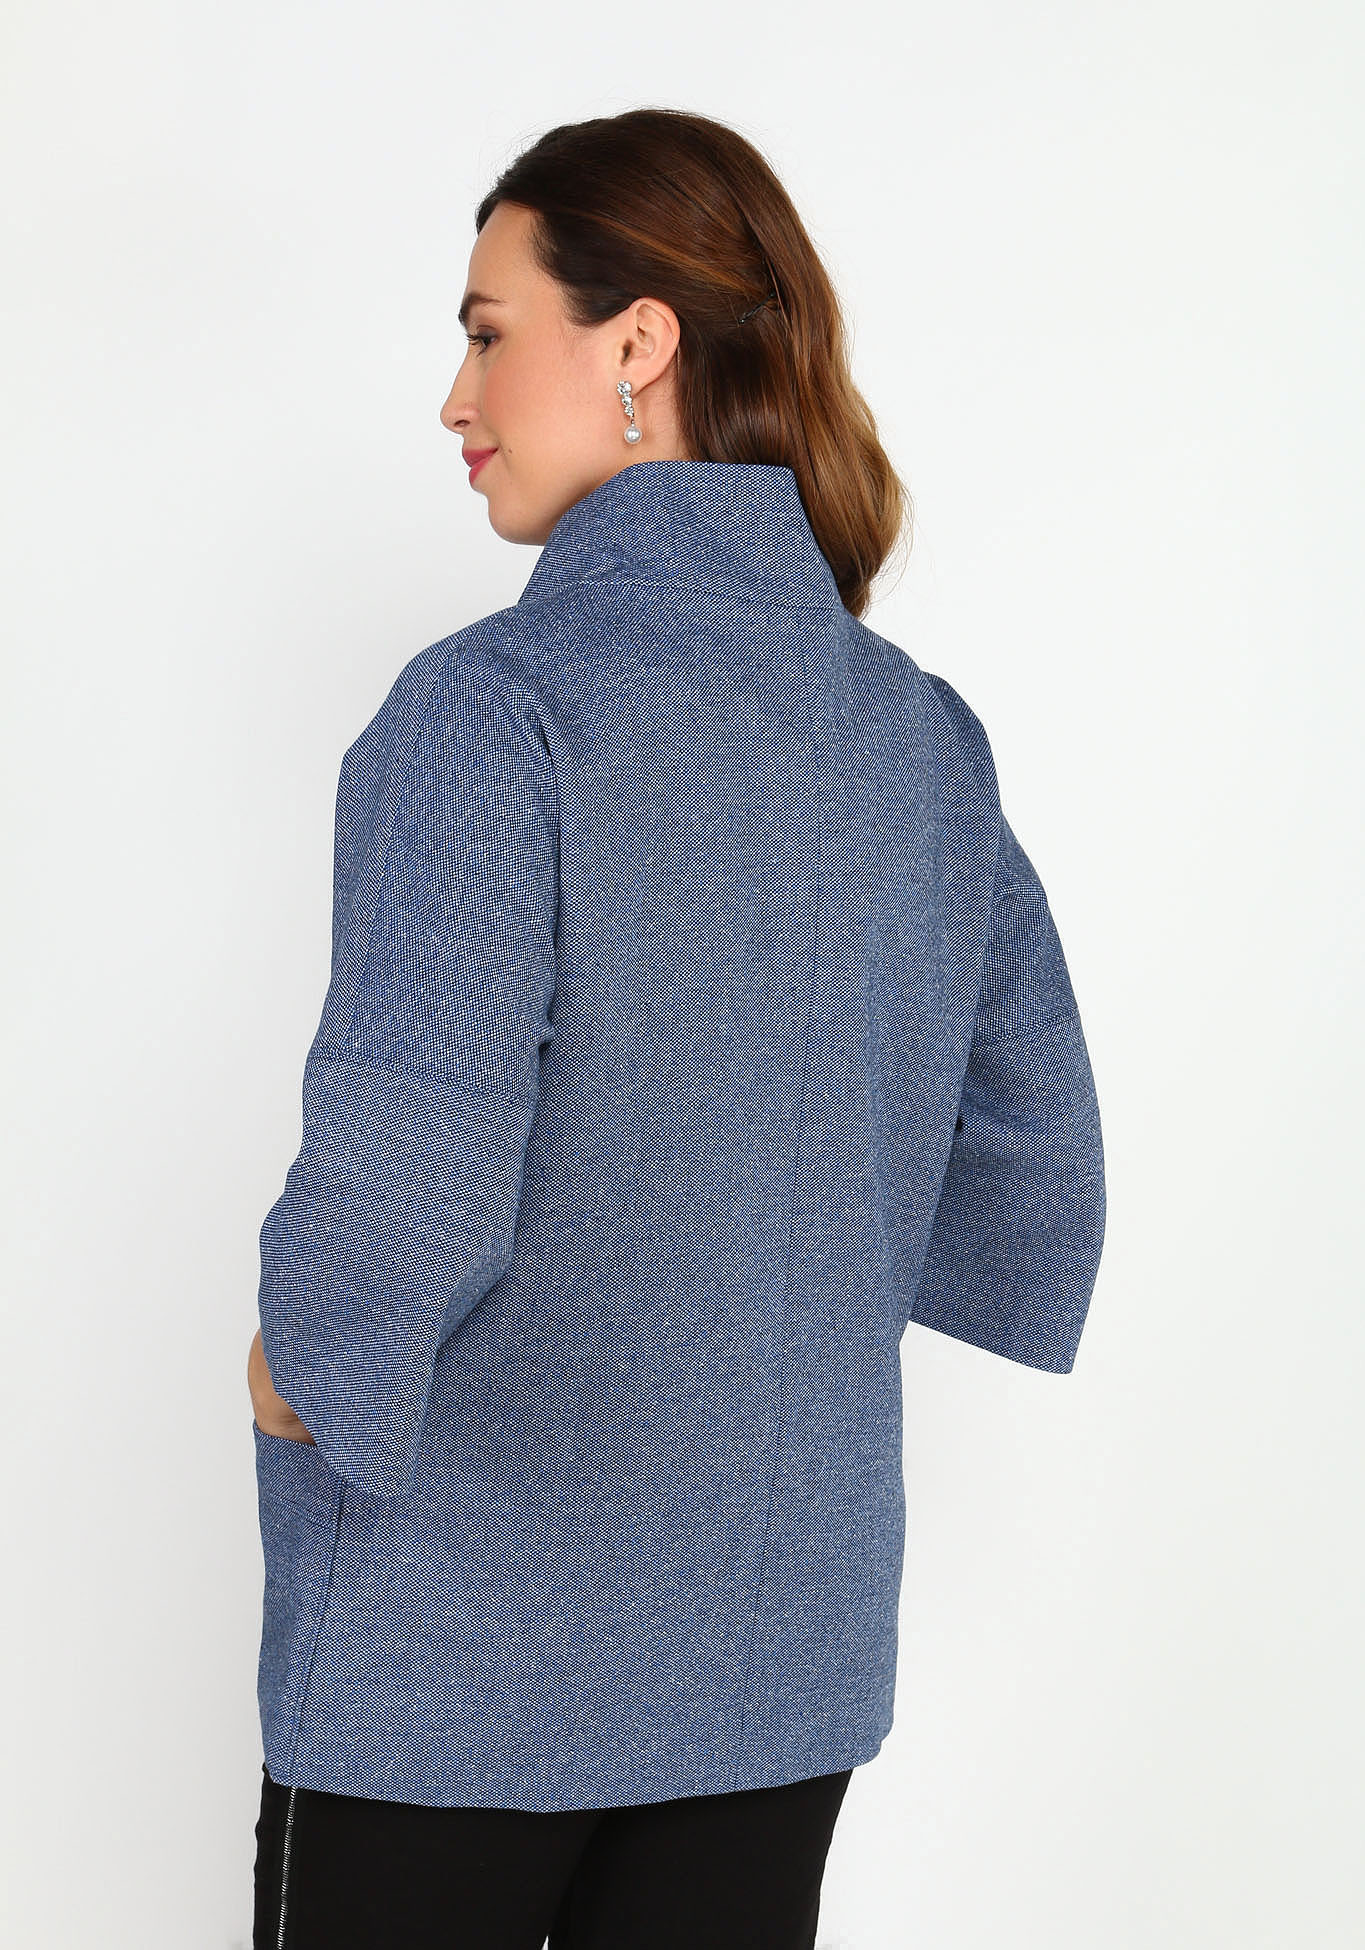 Пальто облегченное с воротником-стойкой Новое Время, размер 48, цвет синий укороченная модель - фото 2